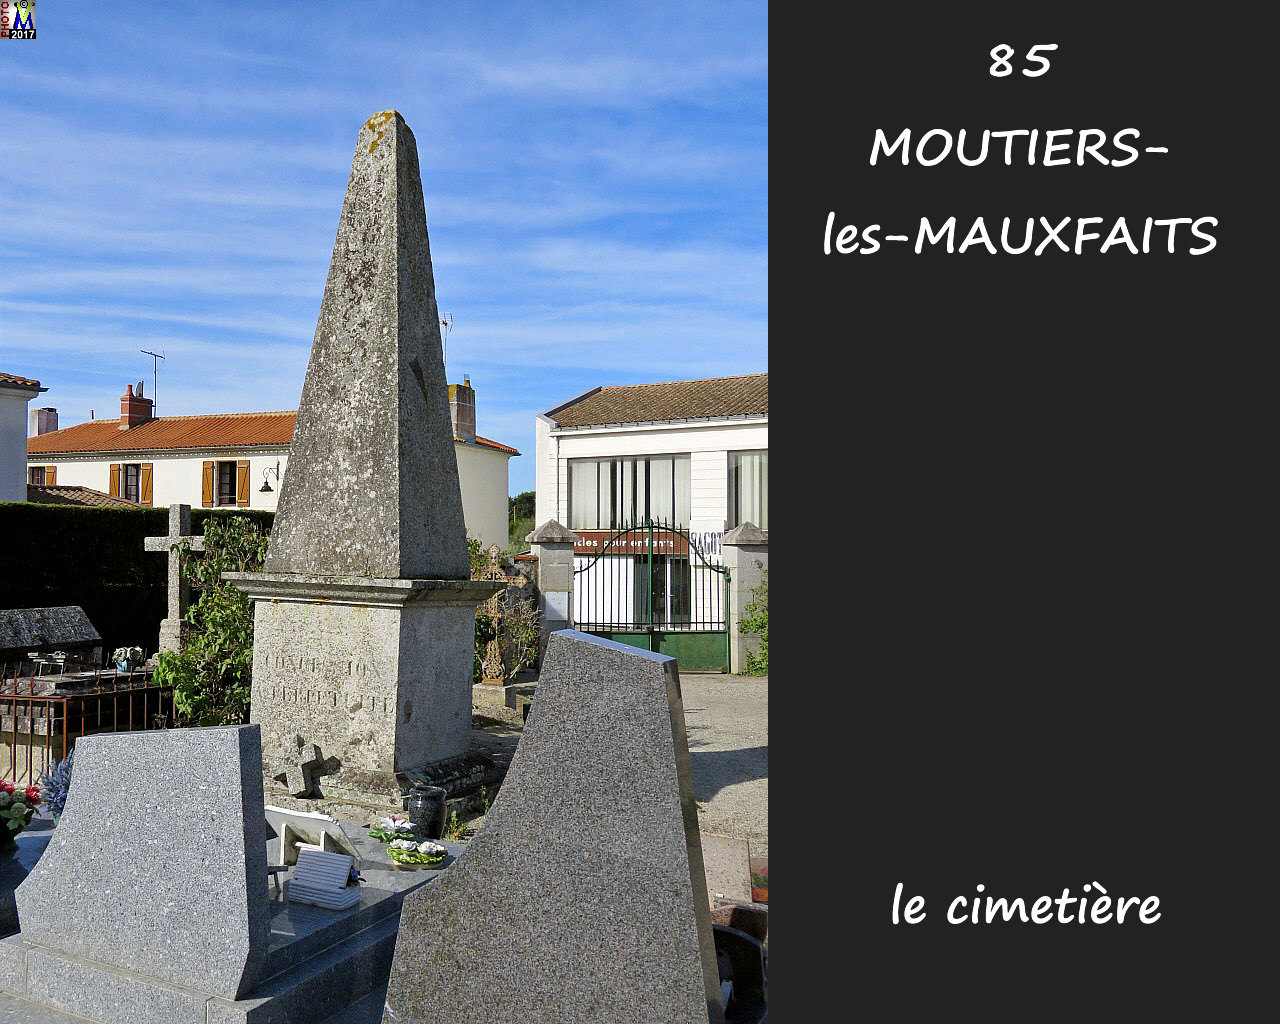 85MOUTIERS-MAUXFAITS_cimetiere_1000.jpg